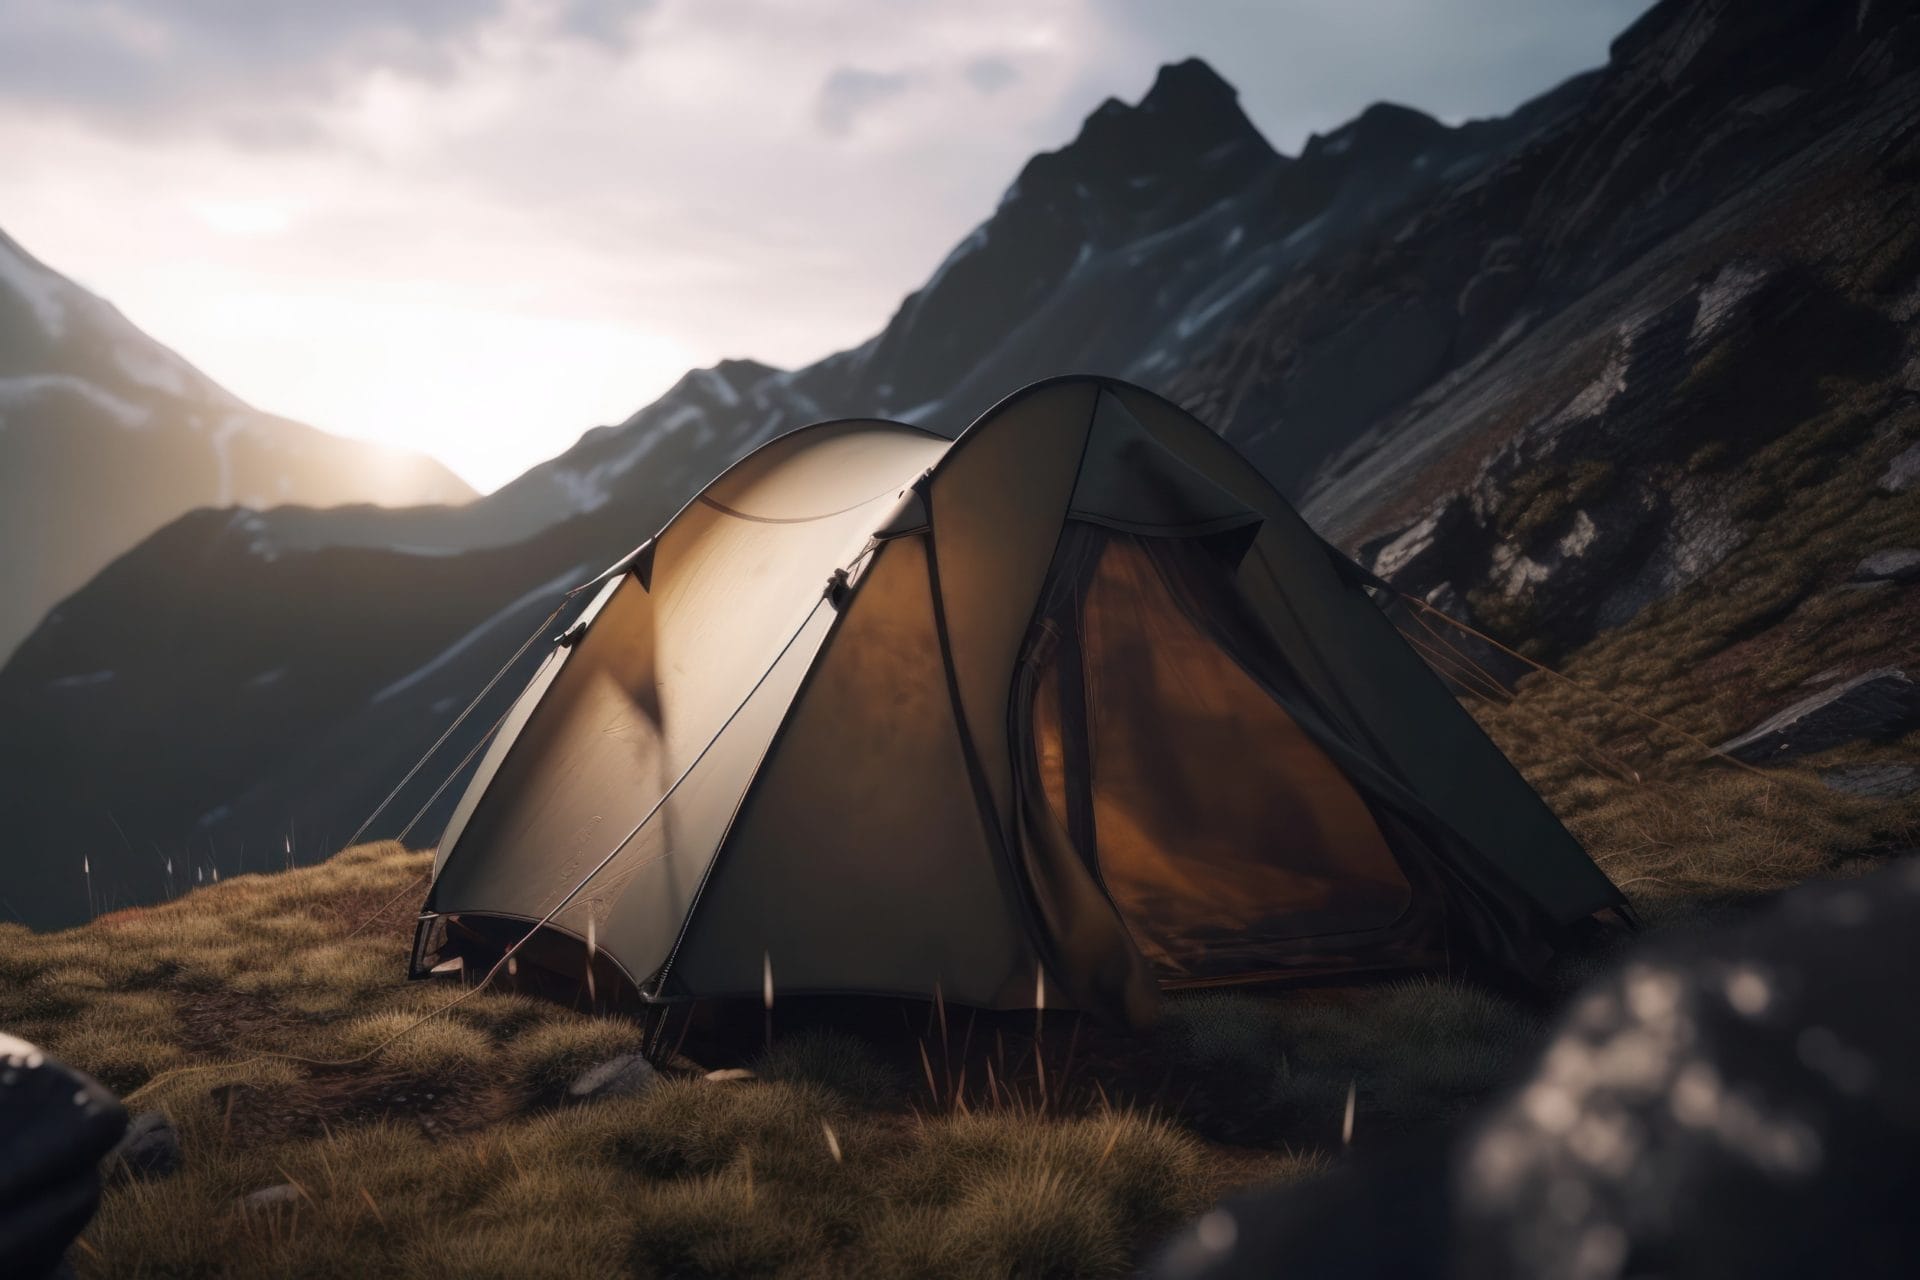 Lire la suite à propos de l’article Camping montagne en France : les meilleurs endroits pour une aventure en pleine nature